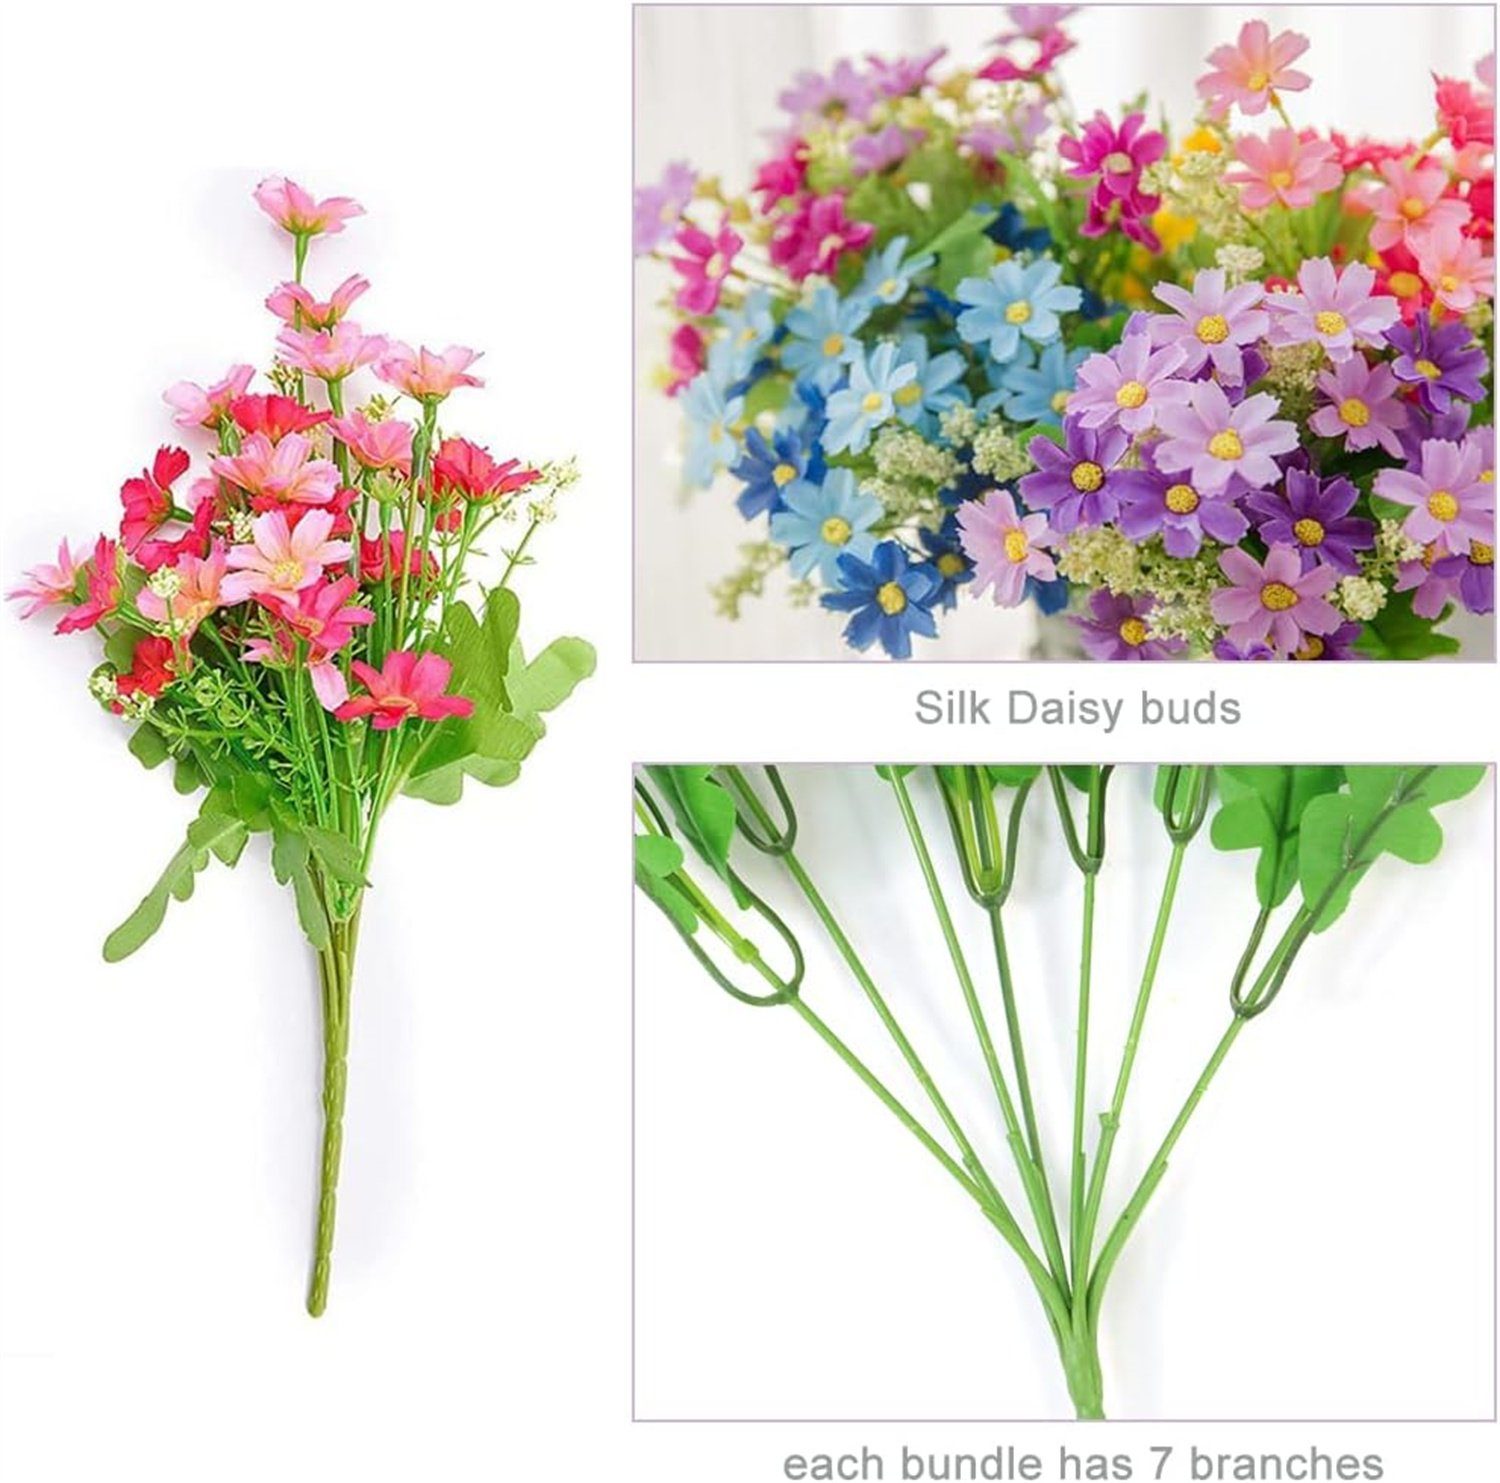 12 Zimmerpflanze 6 Seidengänseblümchen, Blumen, Künstliche autolock Farben Kleine Künstliche Bündel